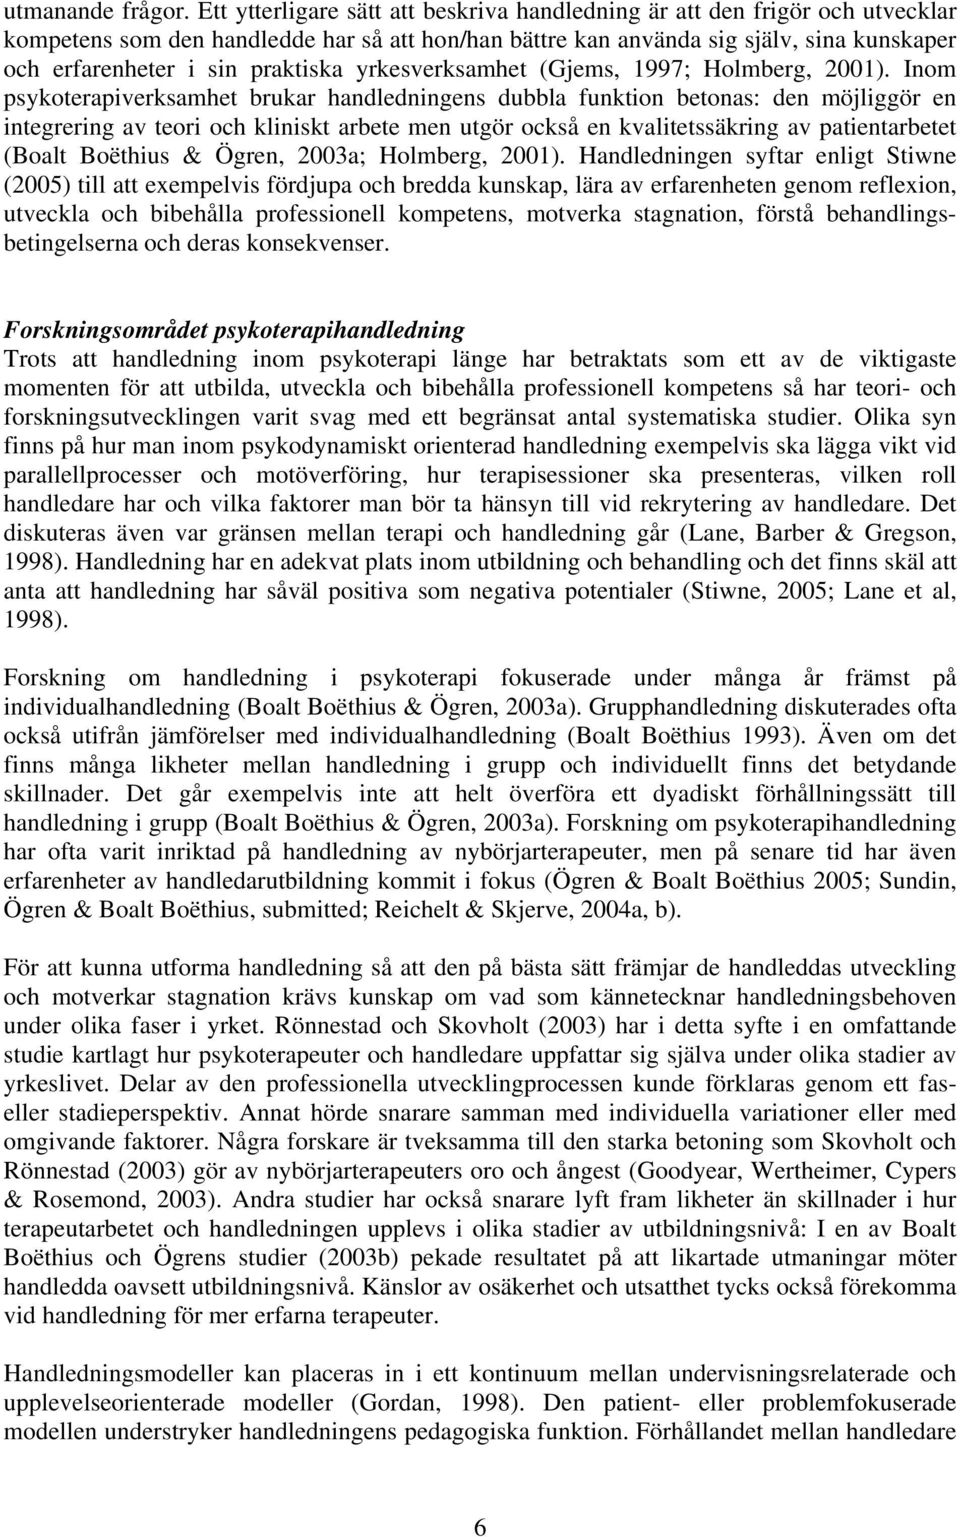 praktiska yrkesverksamhet (Gjems, 1997; Holmberg, 2001).